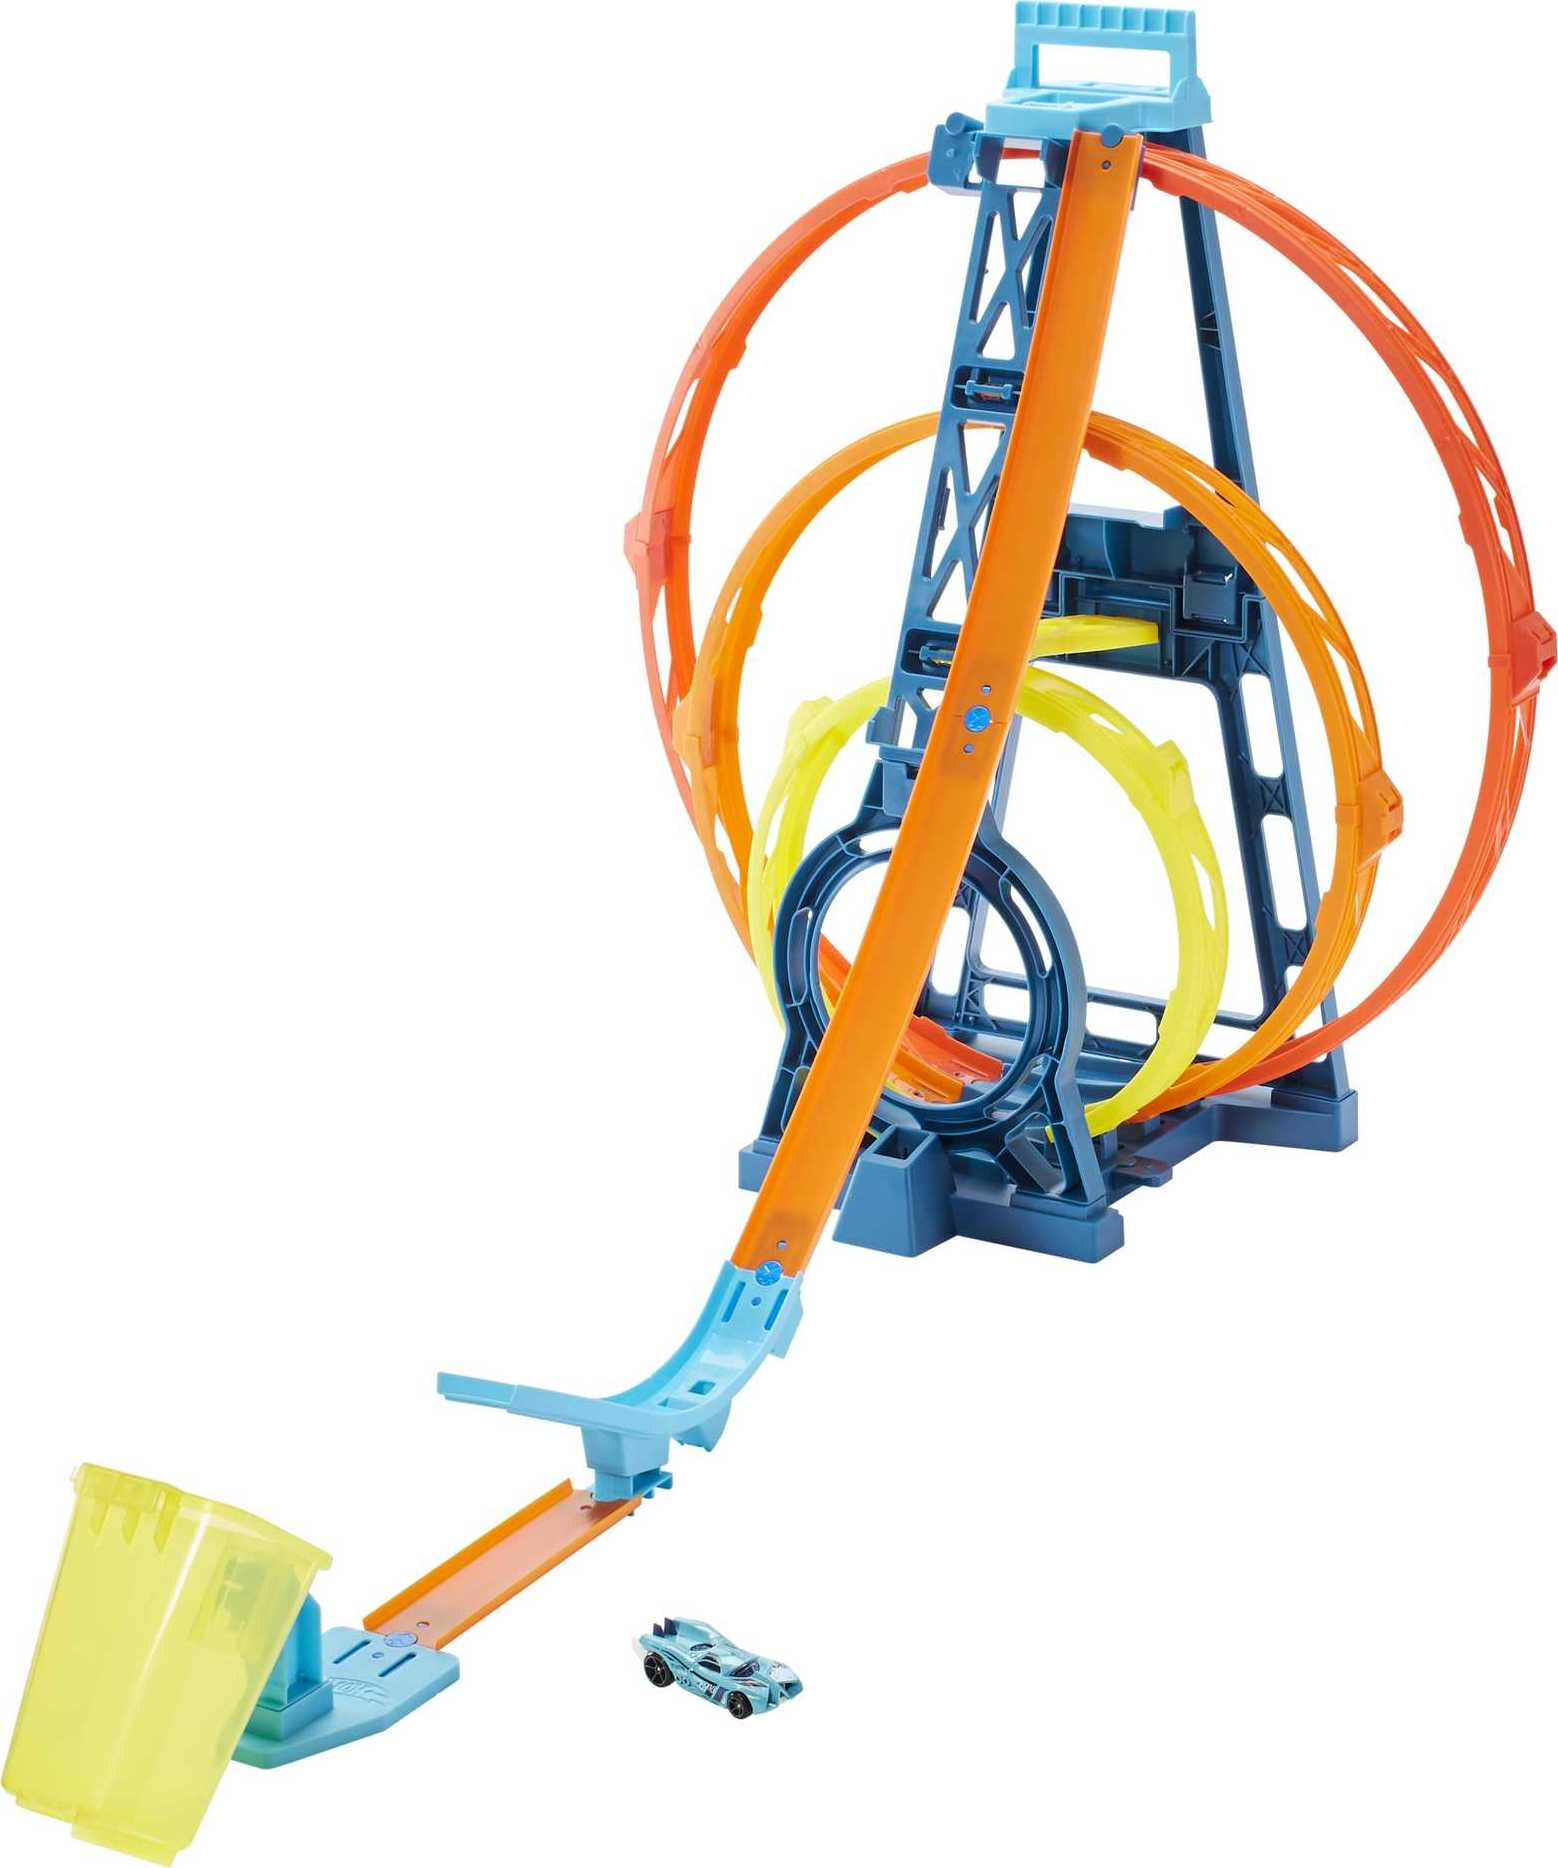 Hot Wheels Track Builder Triple Loop Stunt Playset, 1:64 Scale Vehicles​ - image 1 of 7